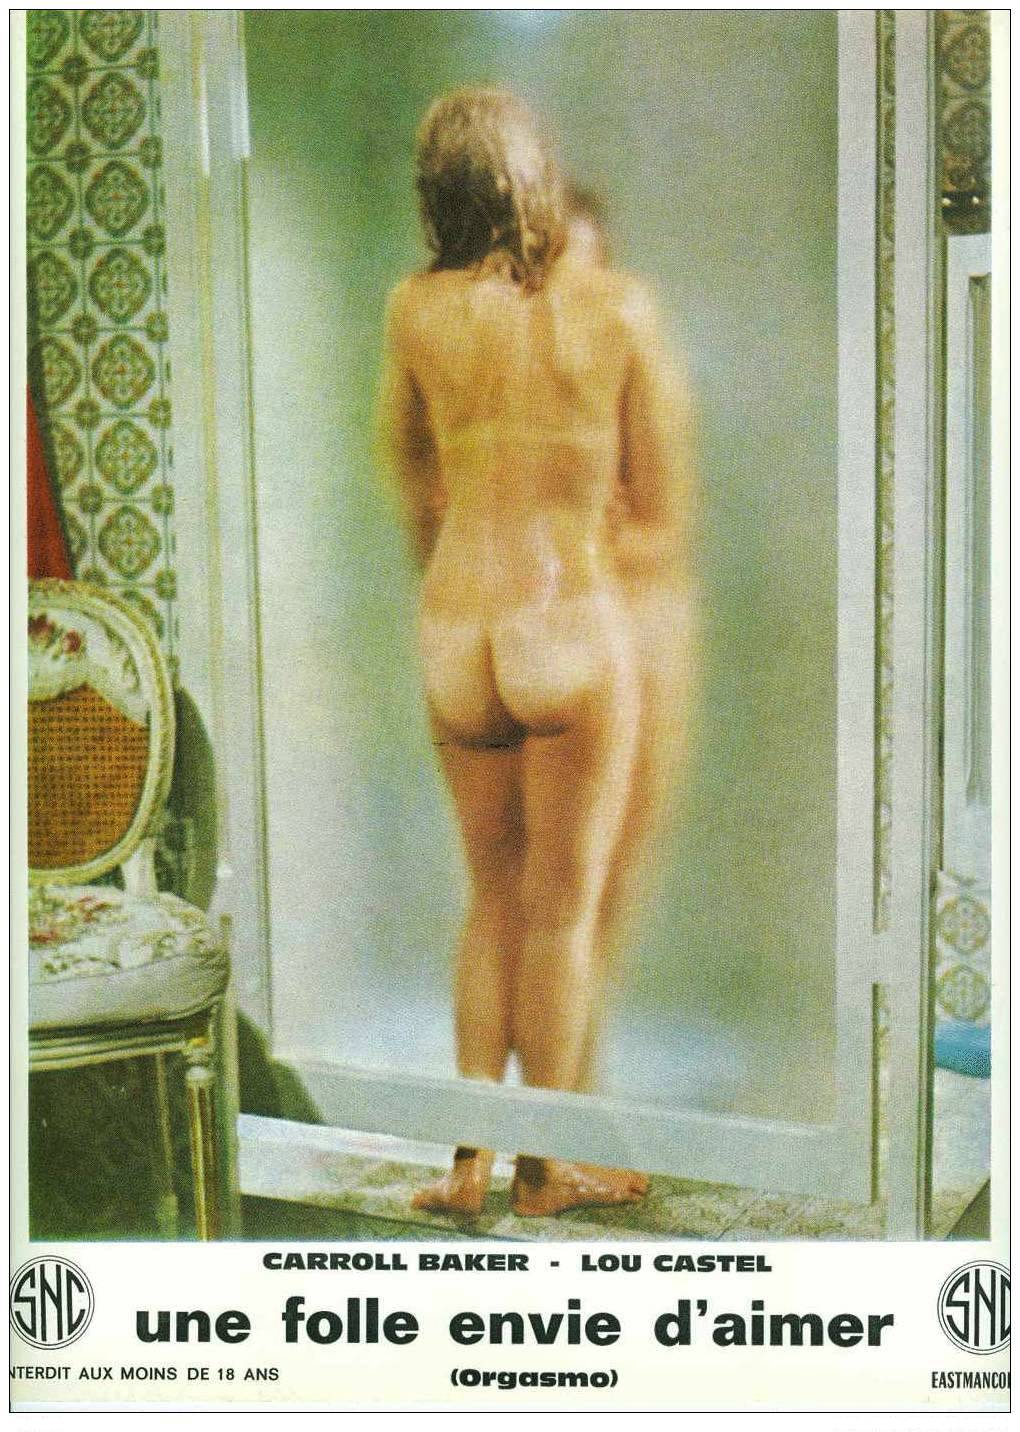 Carroll Baker nude pics.